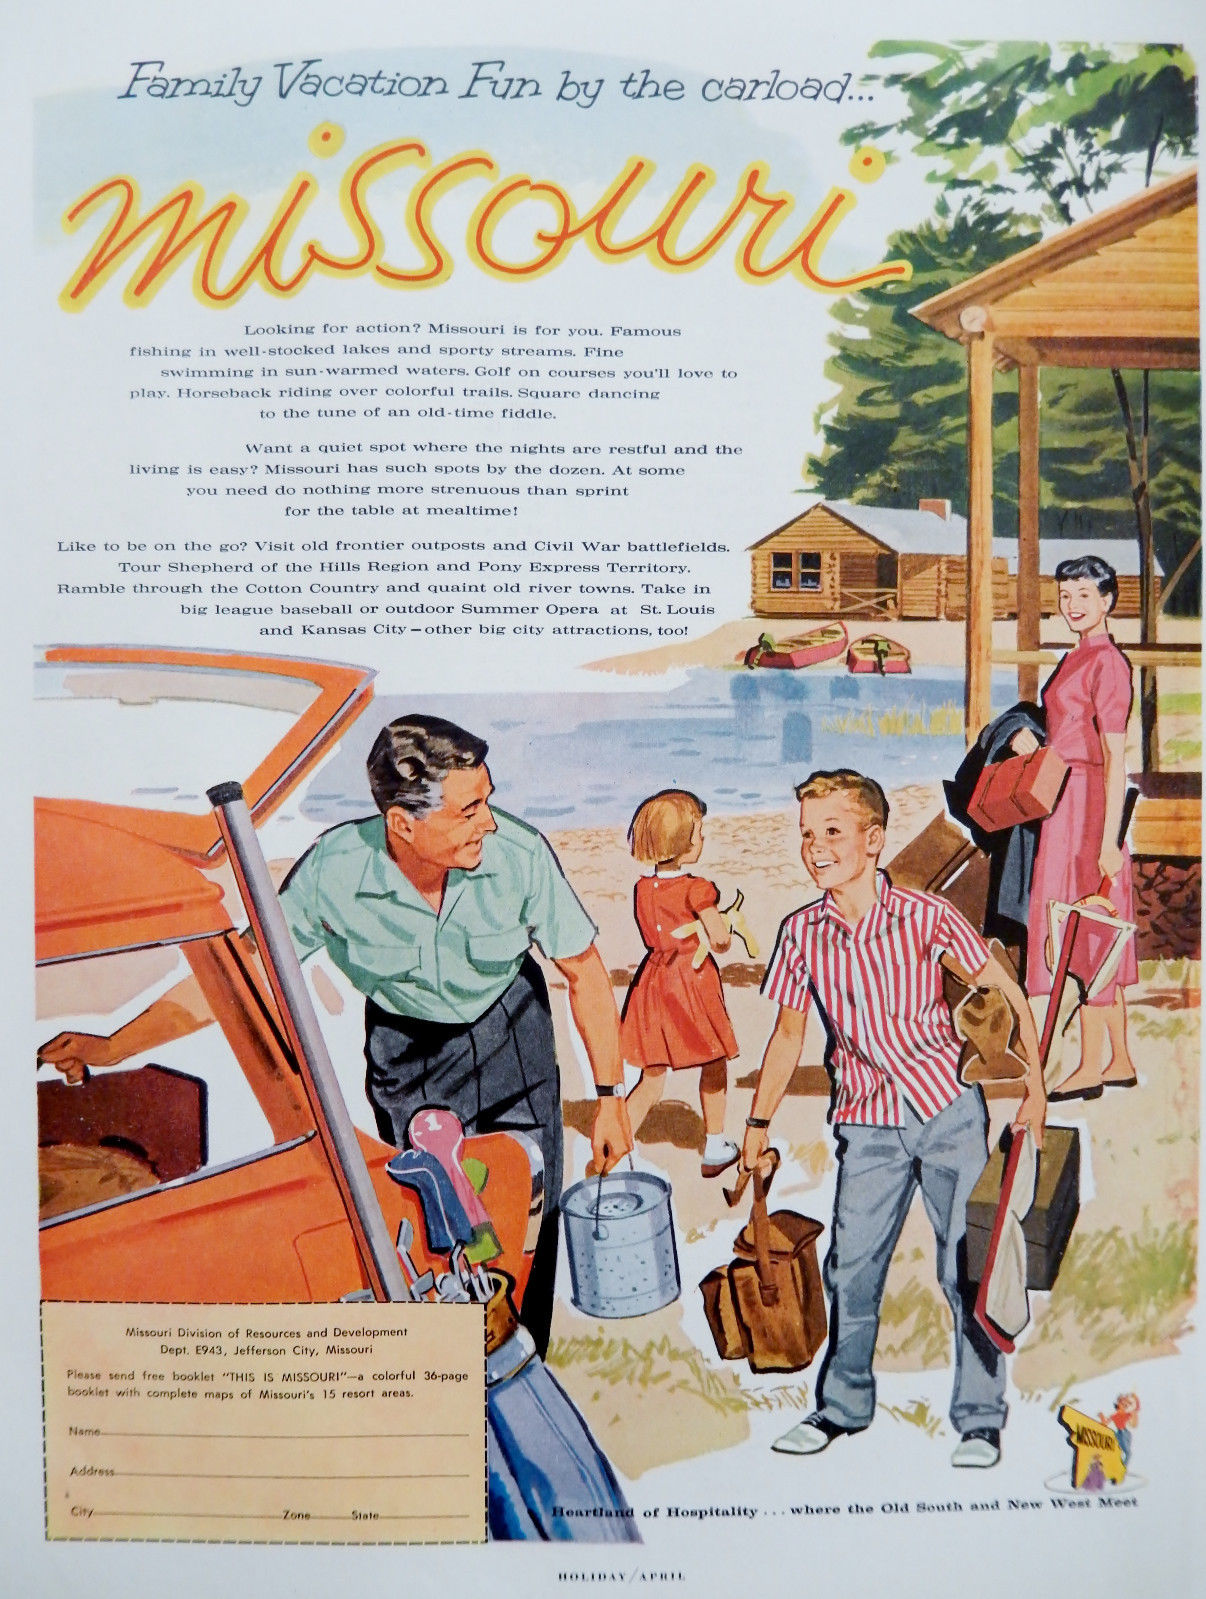 1959 Missouri Tourism advert